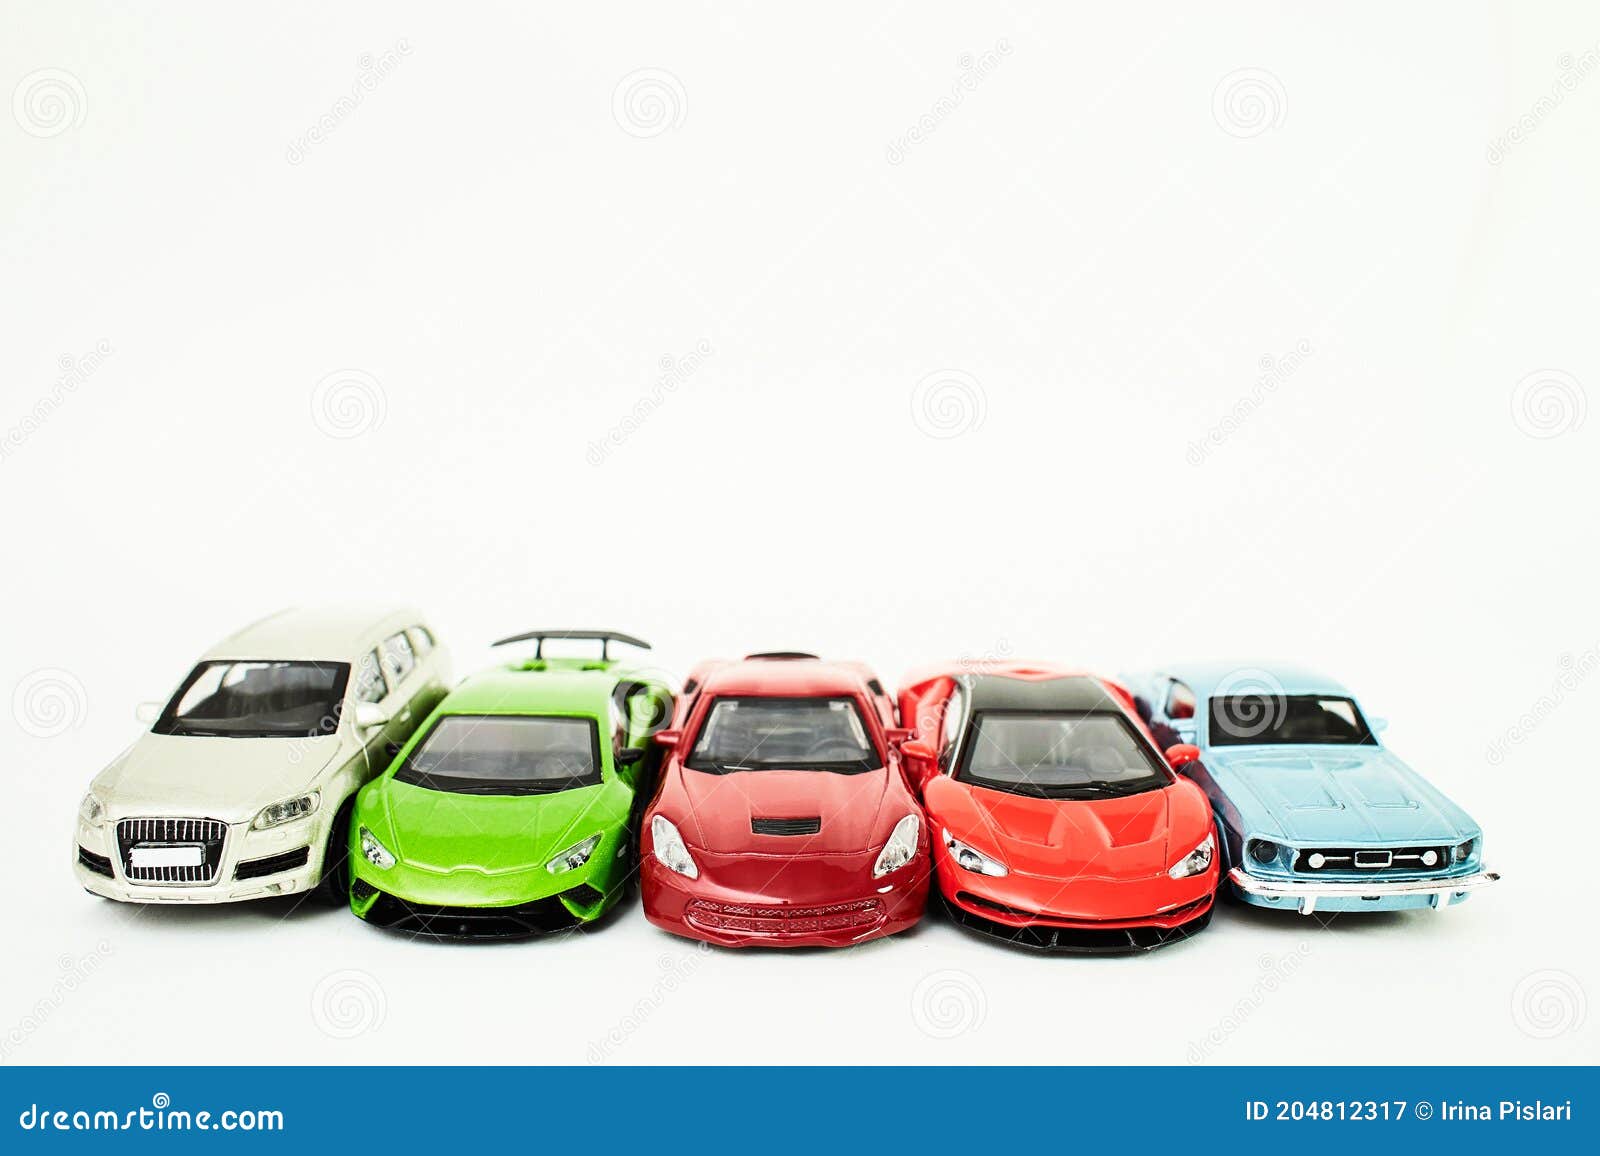 Speelgoedauto S Op Witte Achtergrond Stock Afbeelding - Image of stijl, cirkel: 204812317